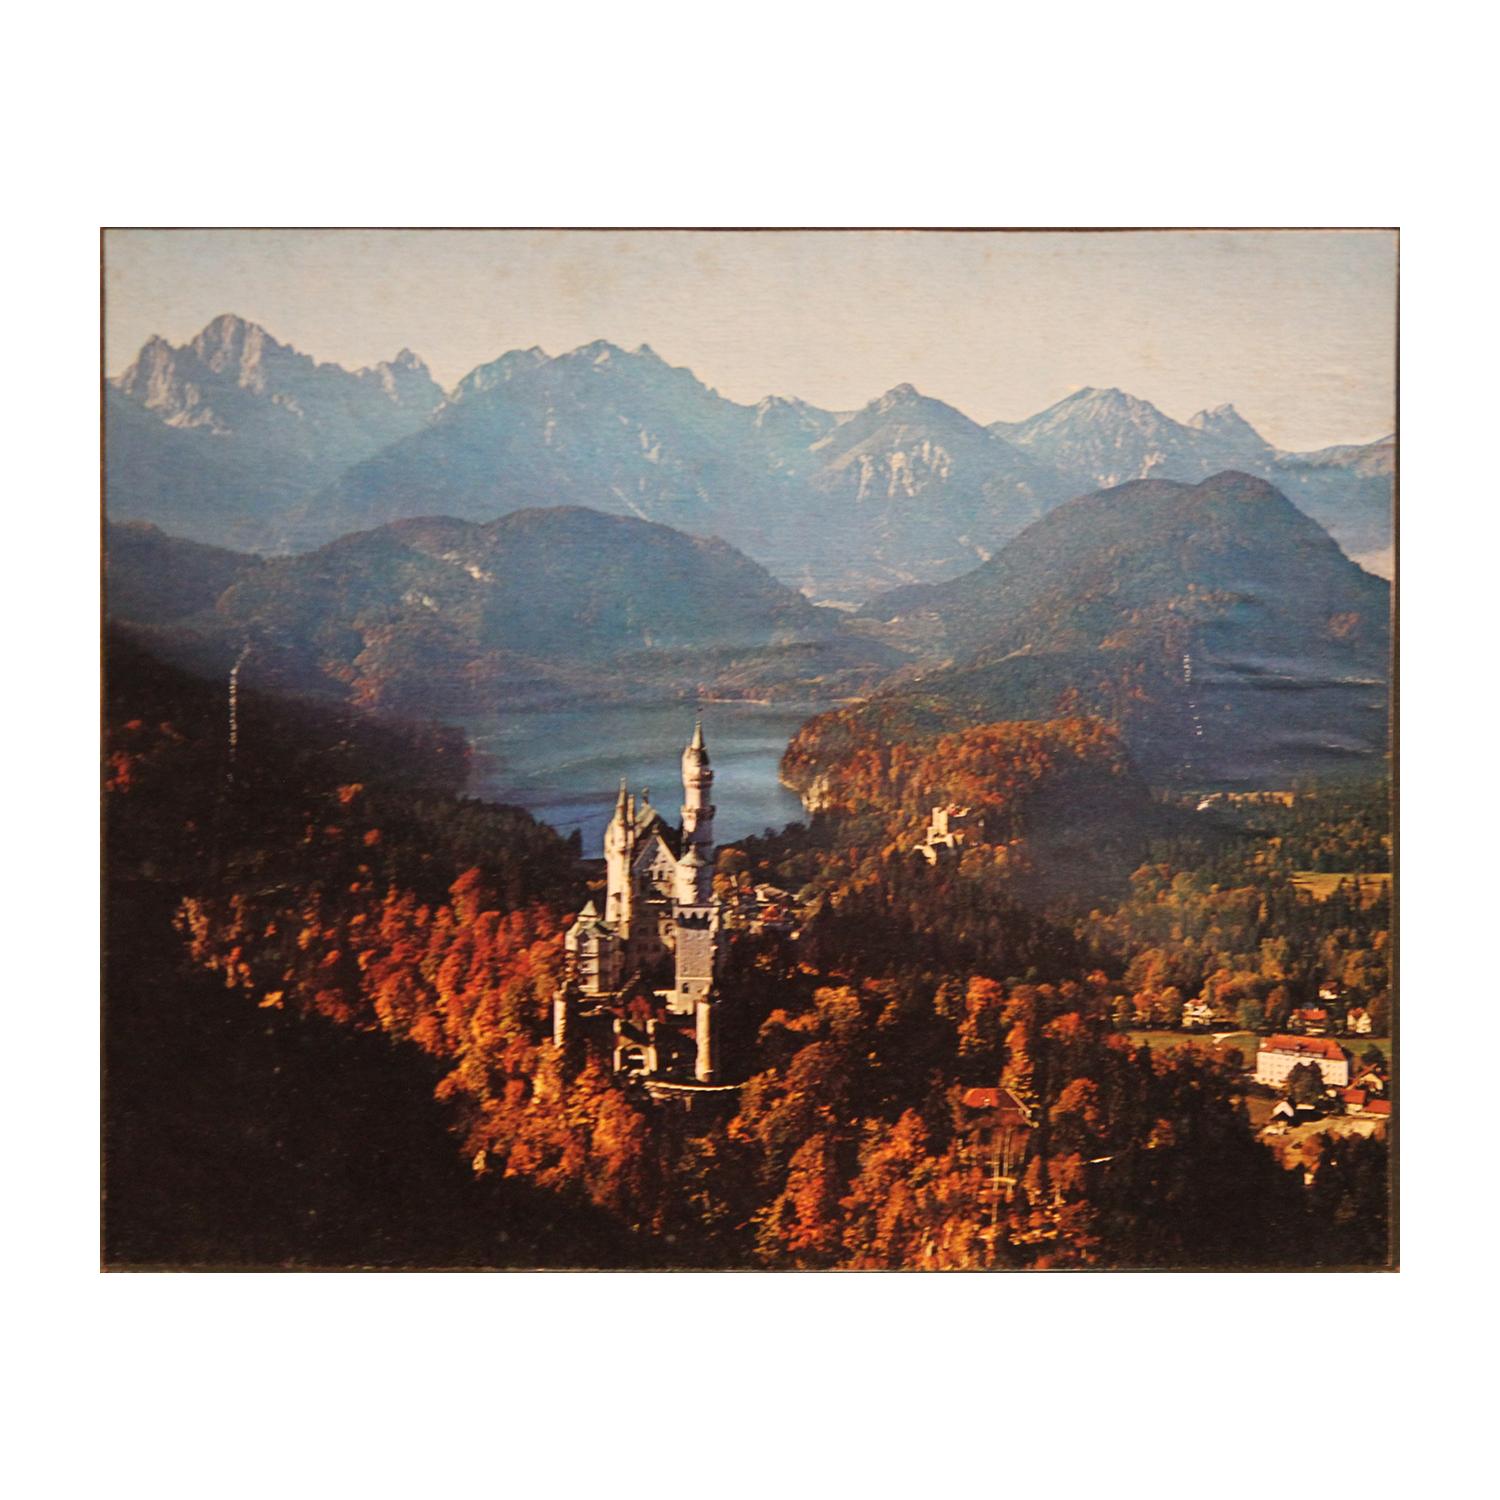 Photographie couleur du château de Neuschwanstein dans la forêt de la Bavière, Allemagne